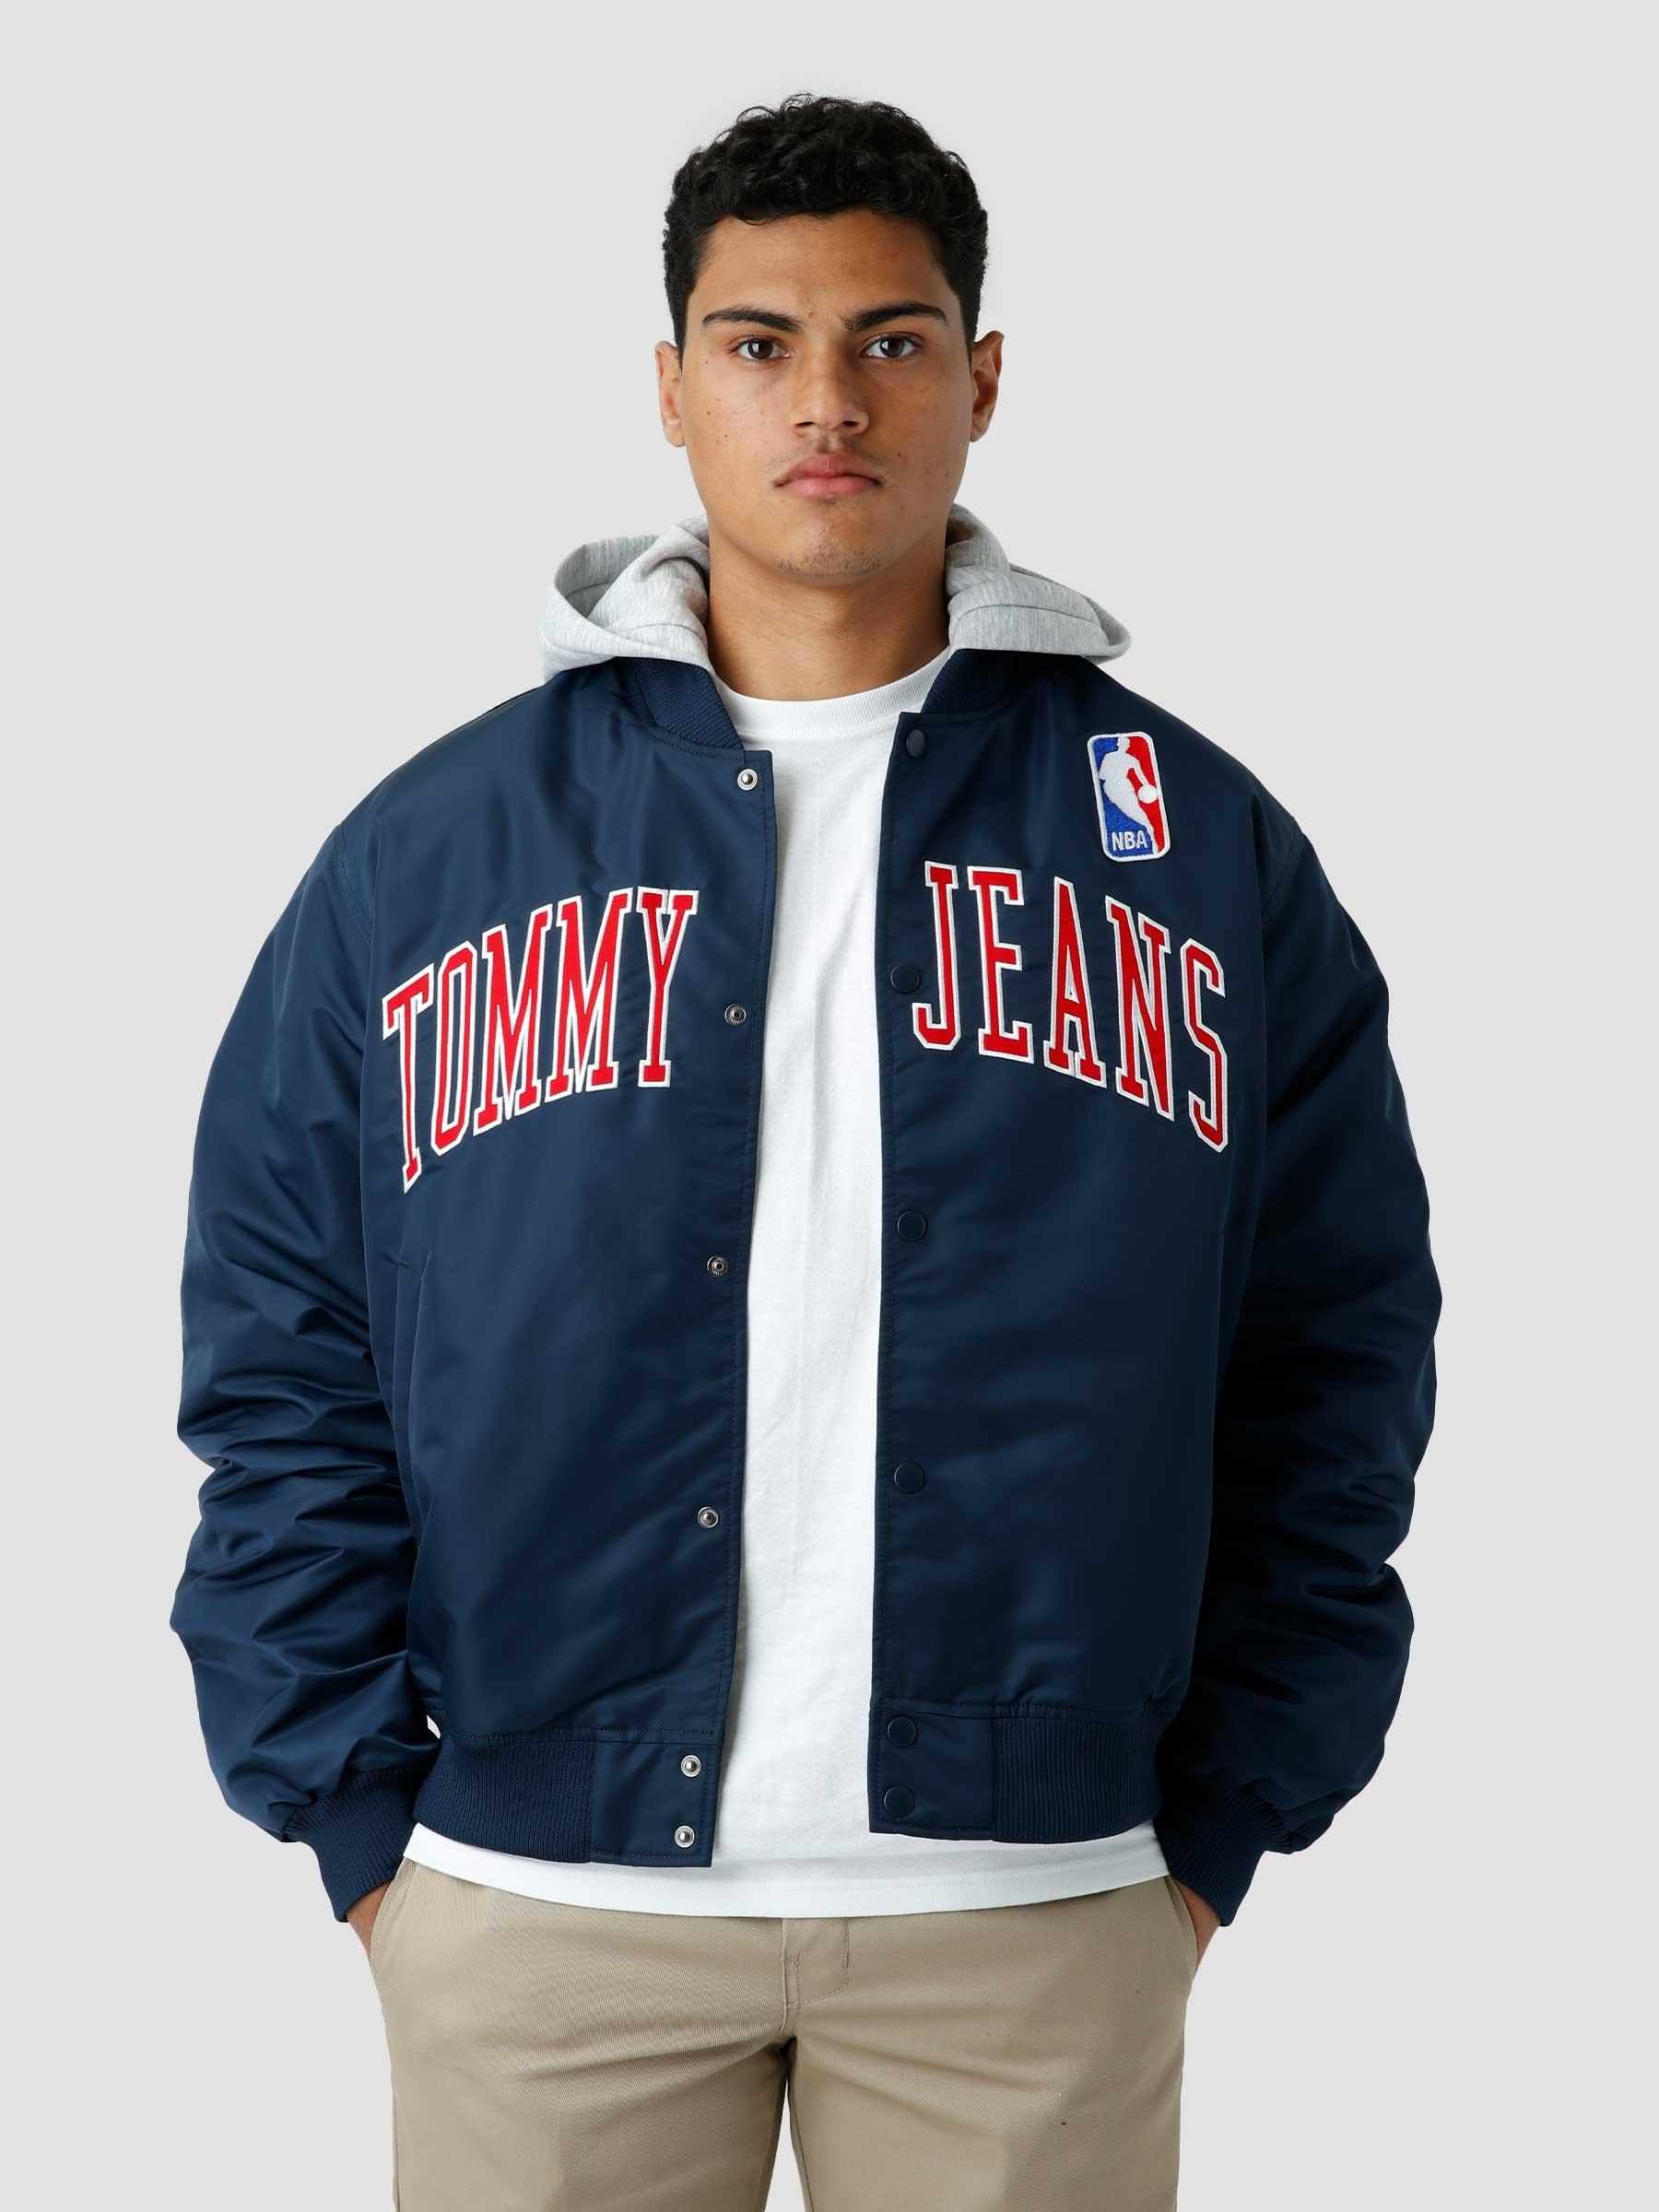 Tommy Jeans TJM NBA-M16-opt2 Jacket Twilight Navy - Freshcotton